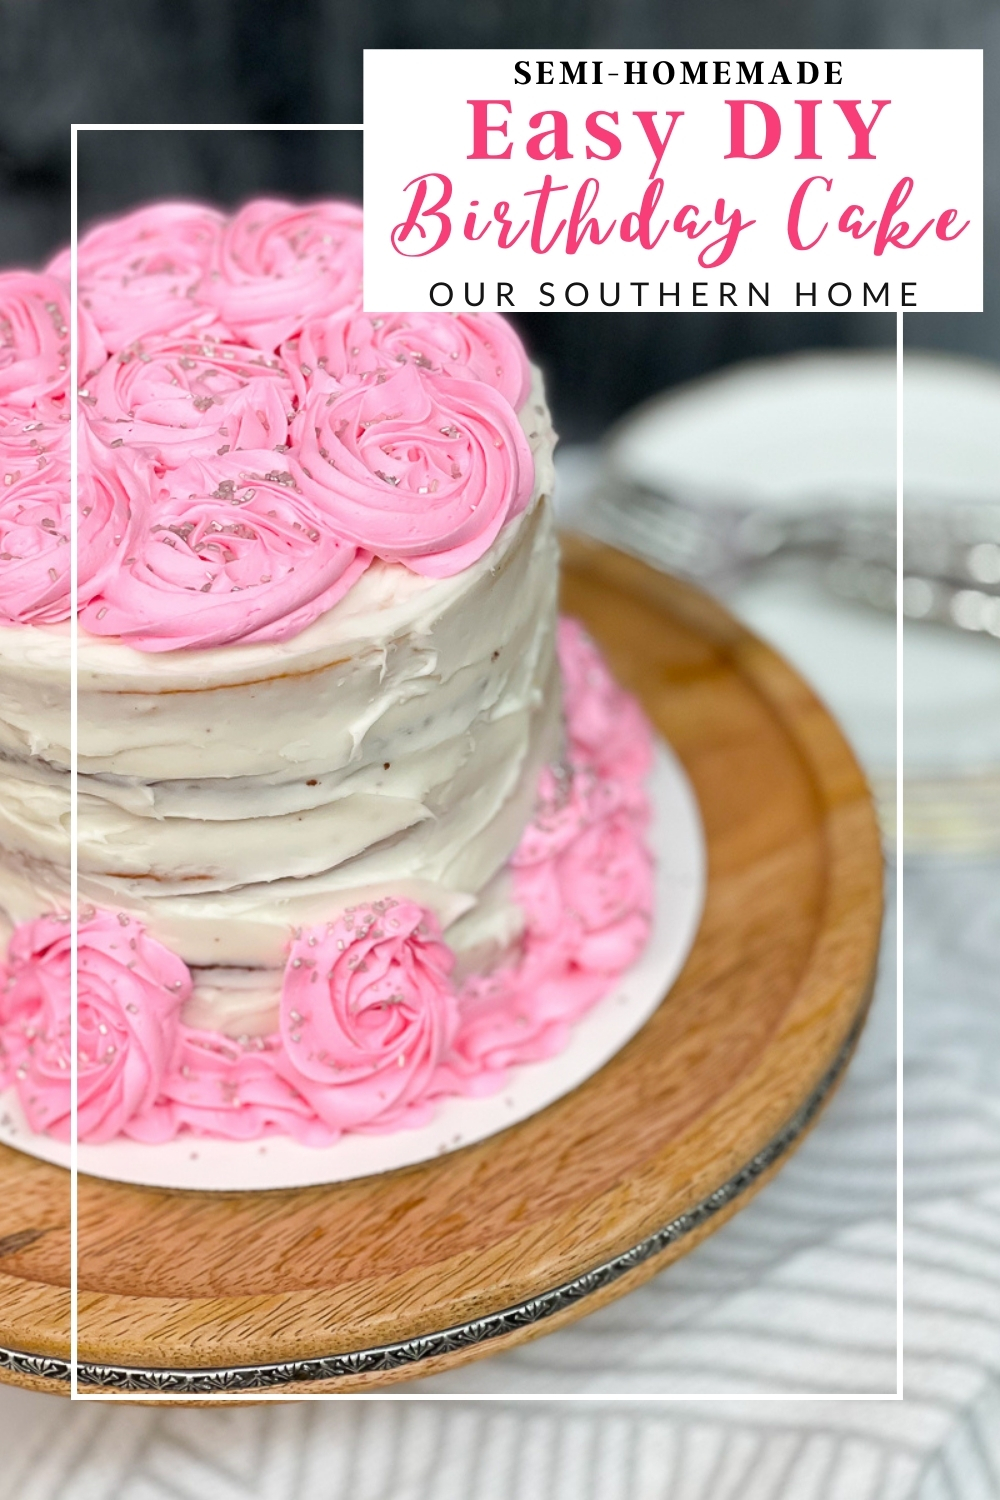 Elegant Homemade Cake Decorating Compilation | DIY Easy Cake decoration  ideas - YouTube